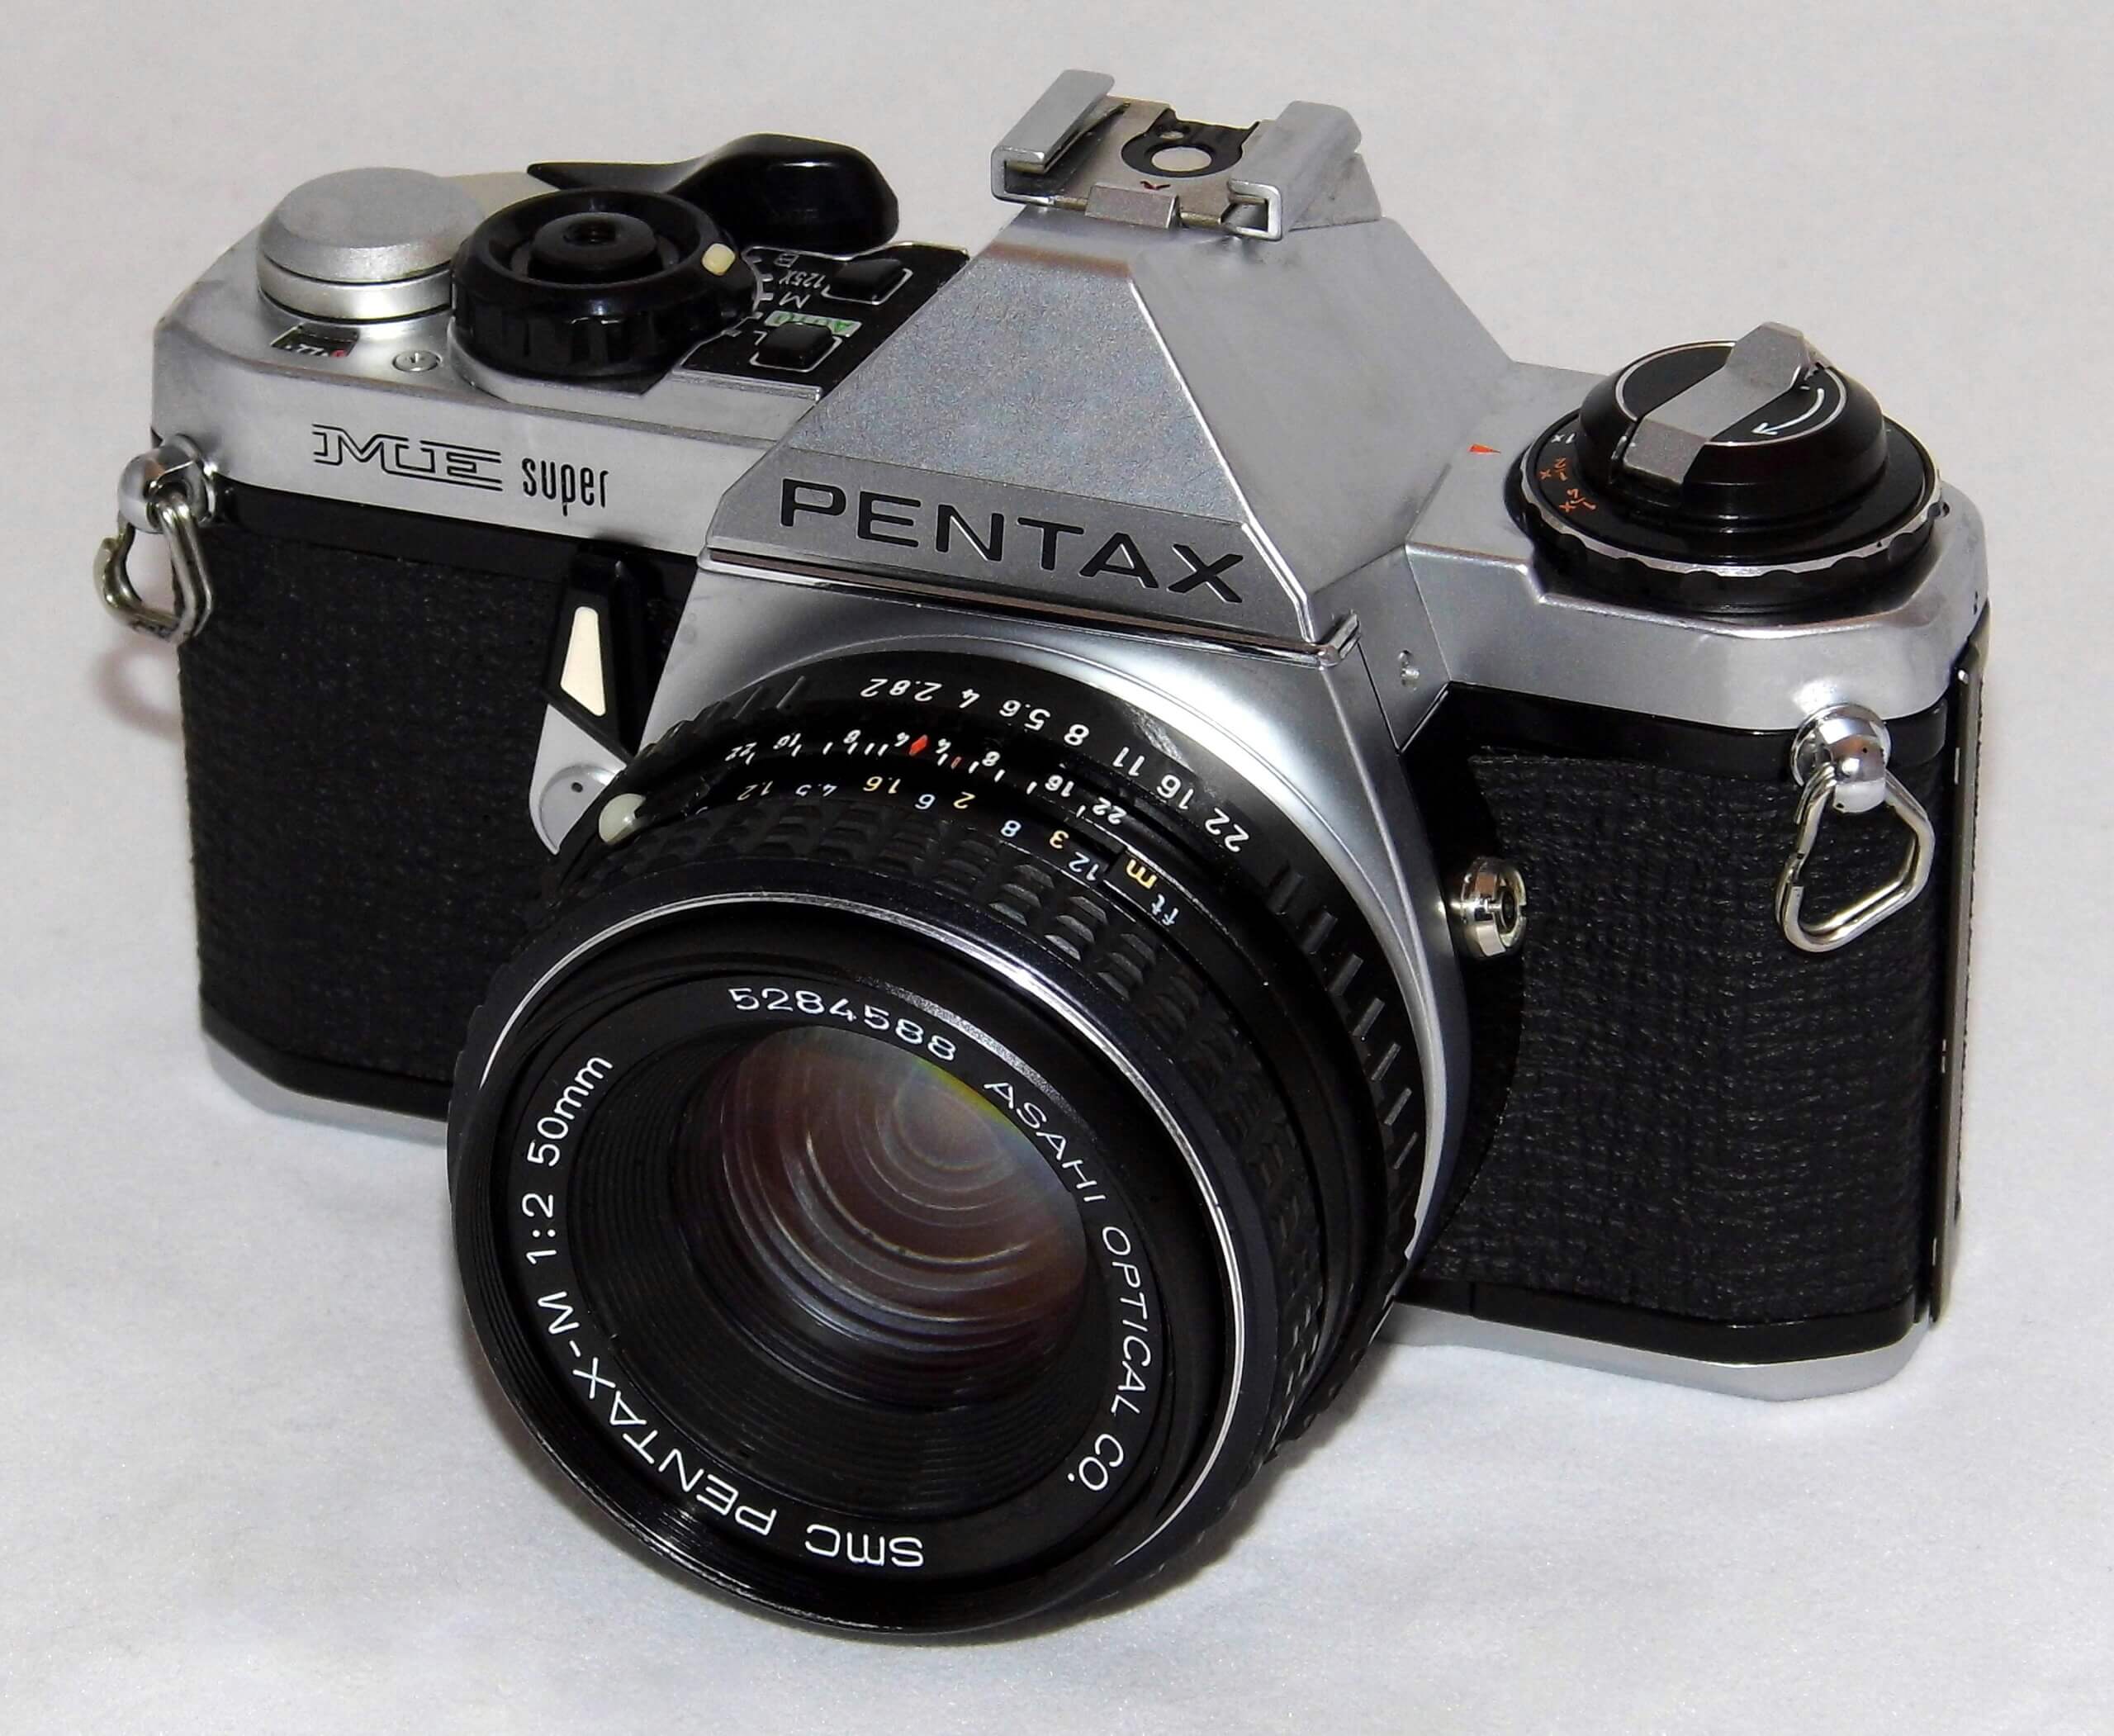 New Pentax film camera – update